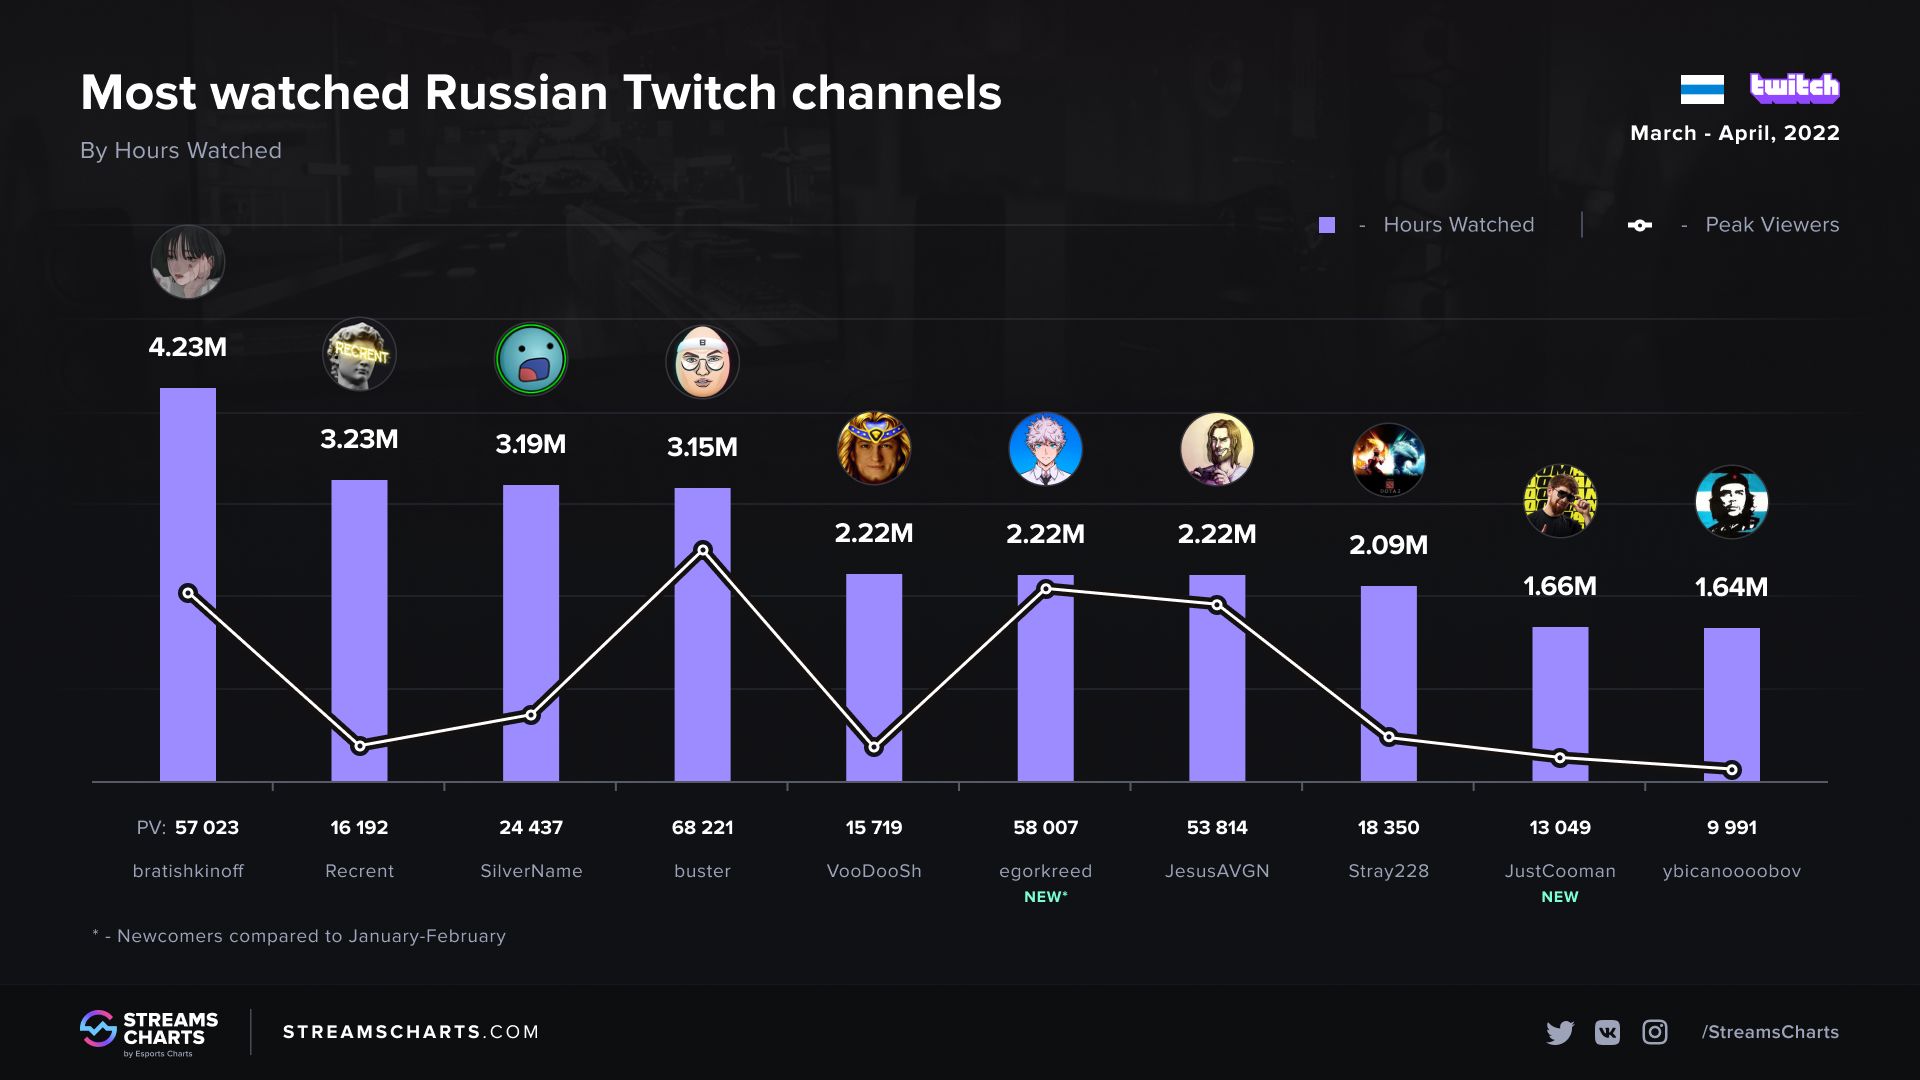 Топ-10 самых просматриваемых русскоязычных стримеров на Twitch в марте-апреле 2022 года | Источник: Streams Charts